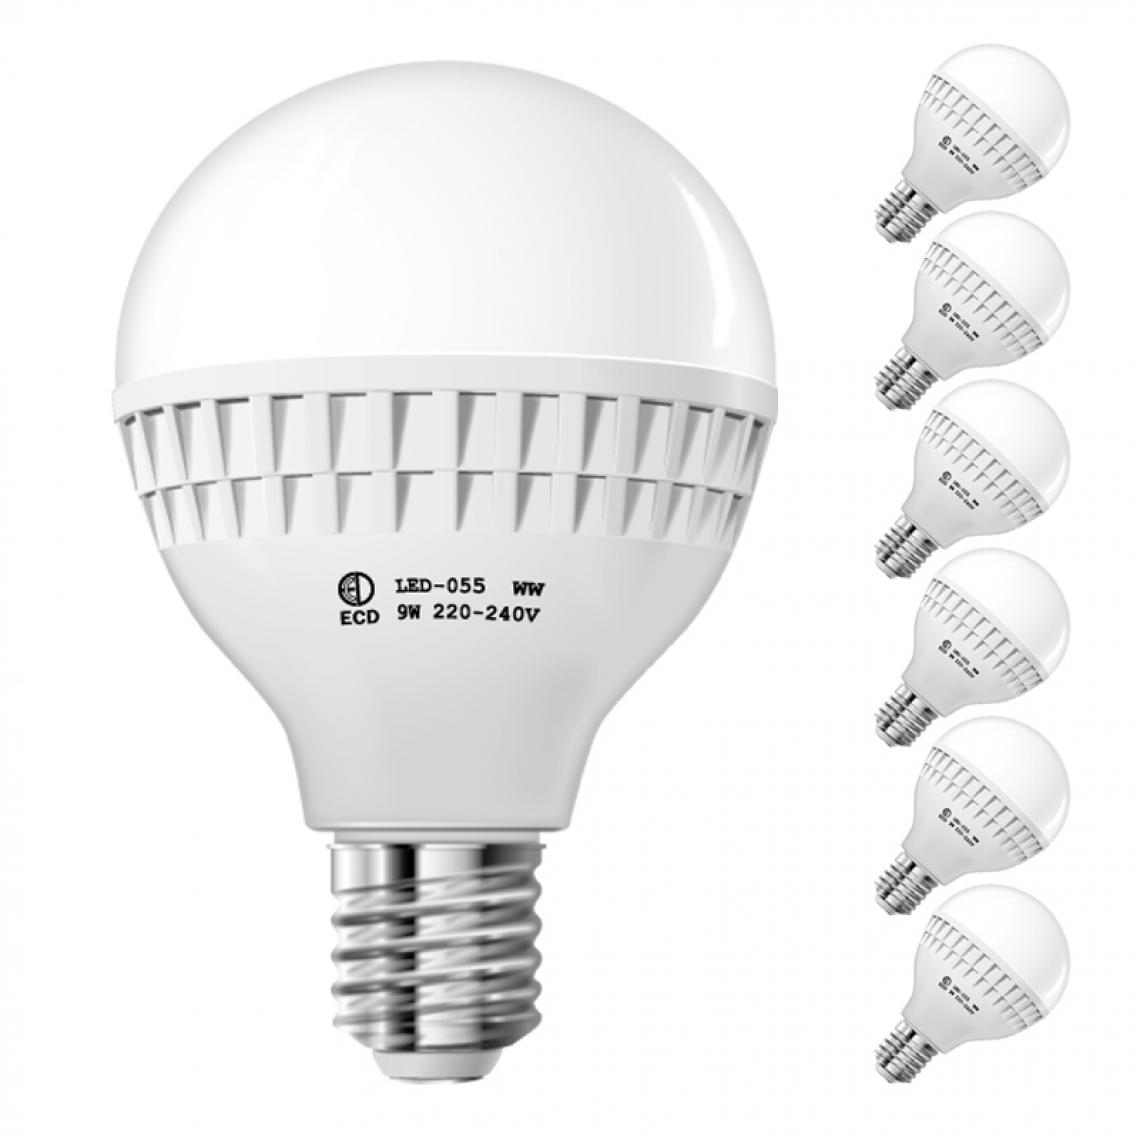 Ecd Germany - ECD Germany 6 x 9W E27 LED Lampe | 6000 Kelvin blanc froid | 584 lumens | 220-240 V | remplace une ampoule halogène de 60 W | Ampoules à économie d'énergie - Ampoules LED